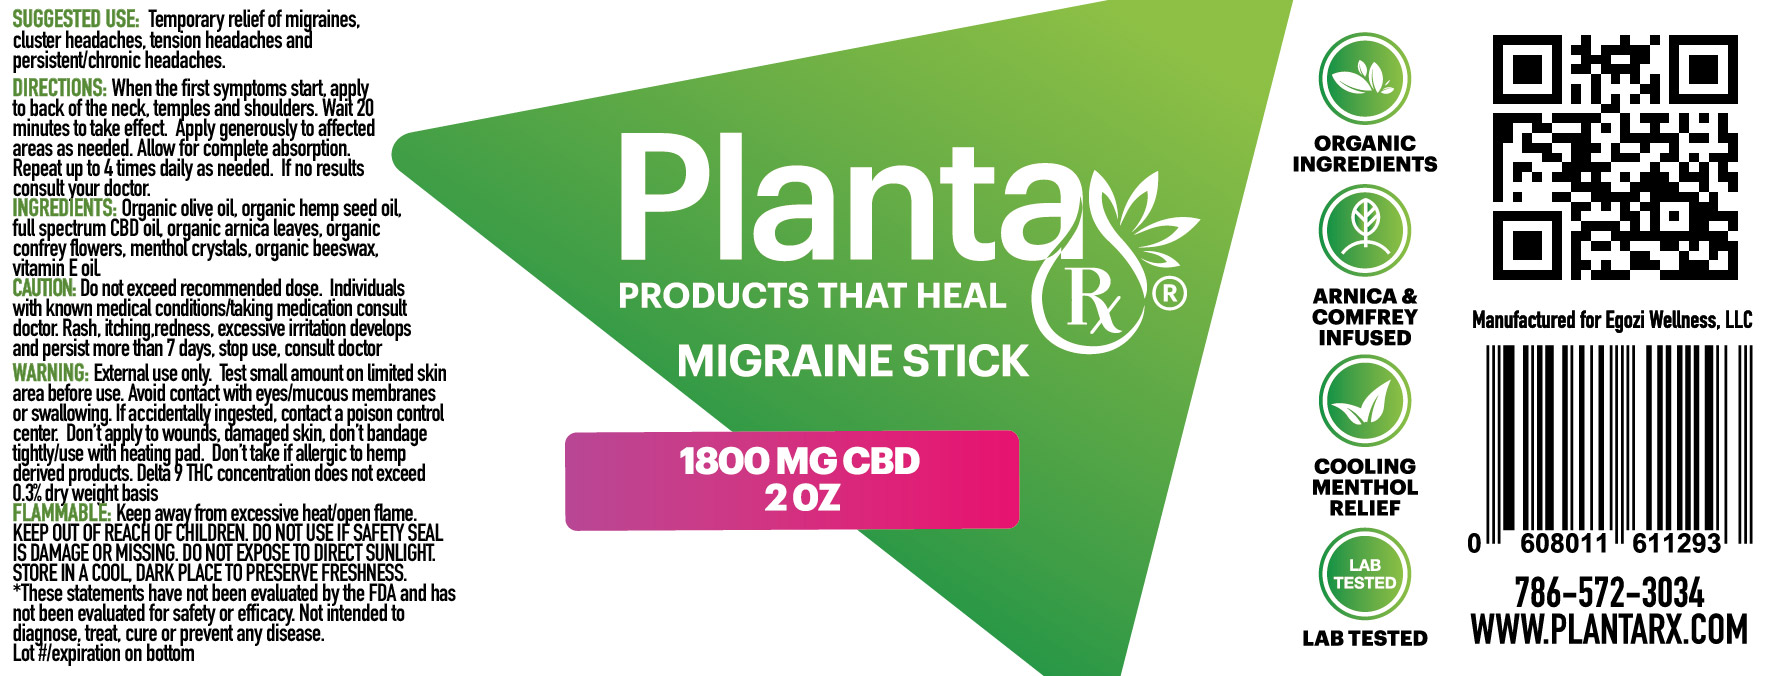 Planta RX Migraine Stick in Miami Beach - CBD + More (Planta RX)